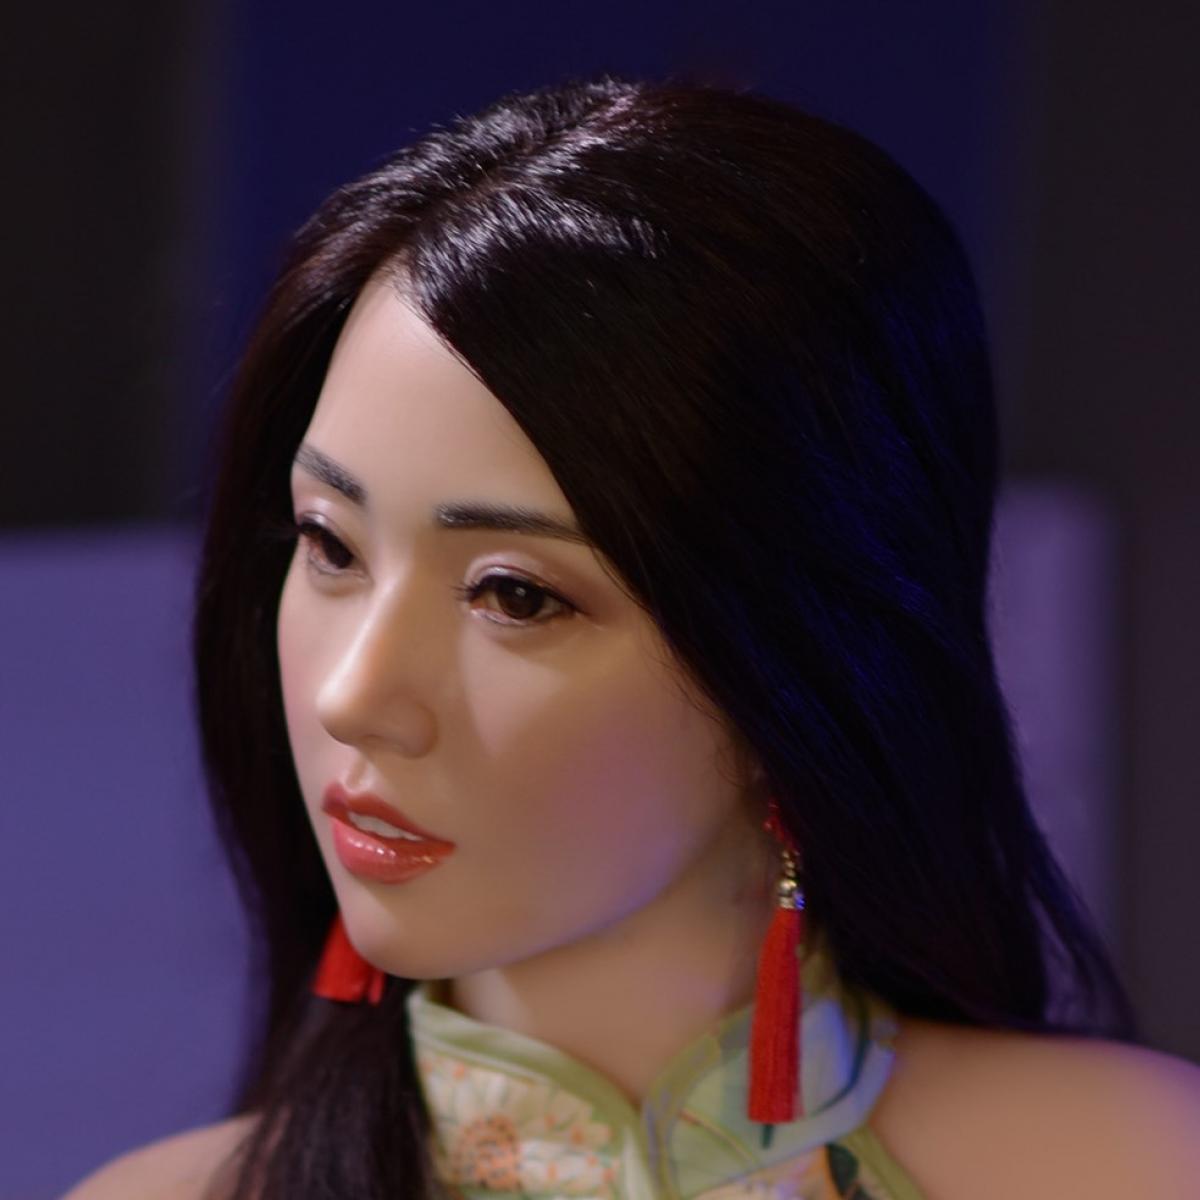 Neodoll Allure Rebecca - Realistic Sex Doll -160cm - Tan